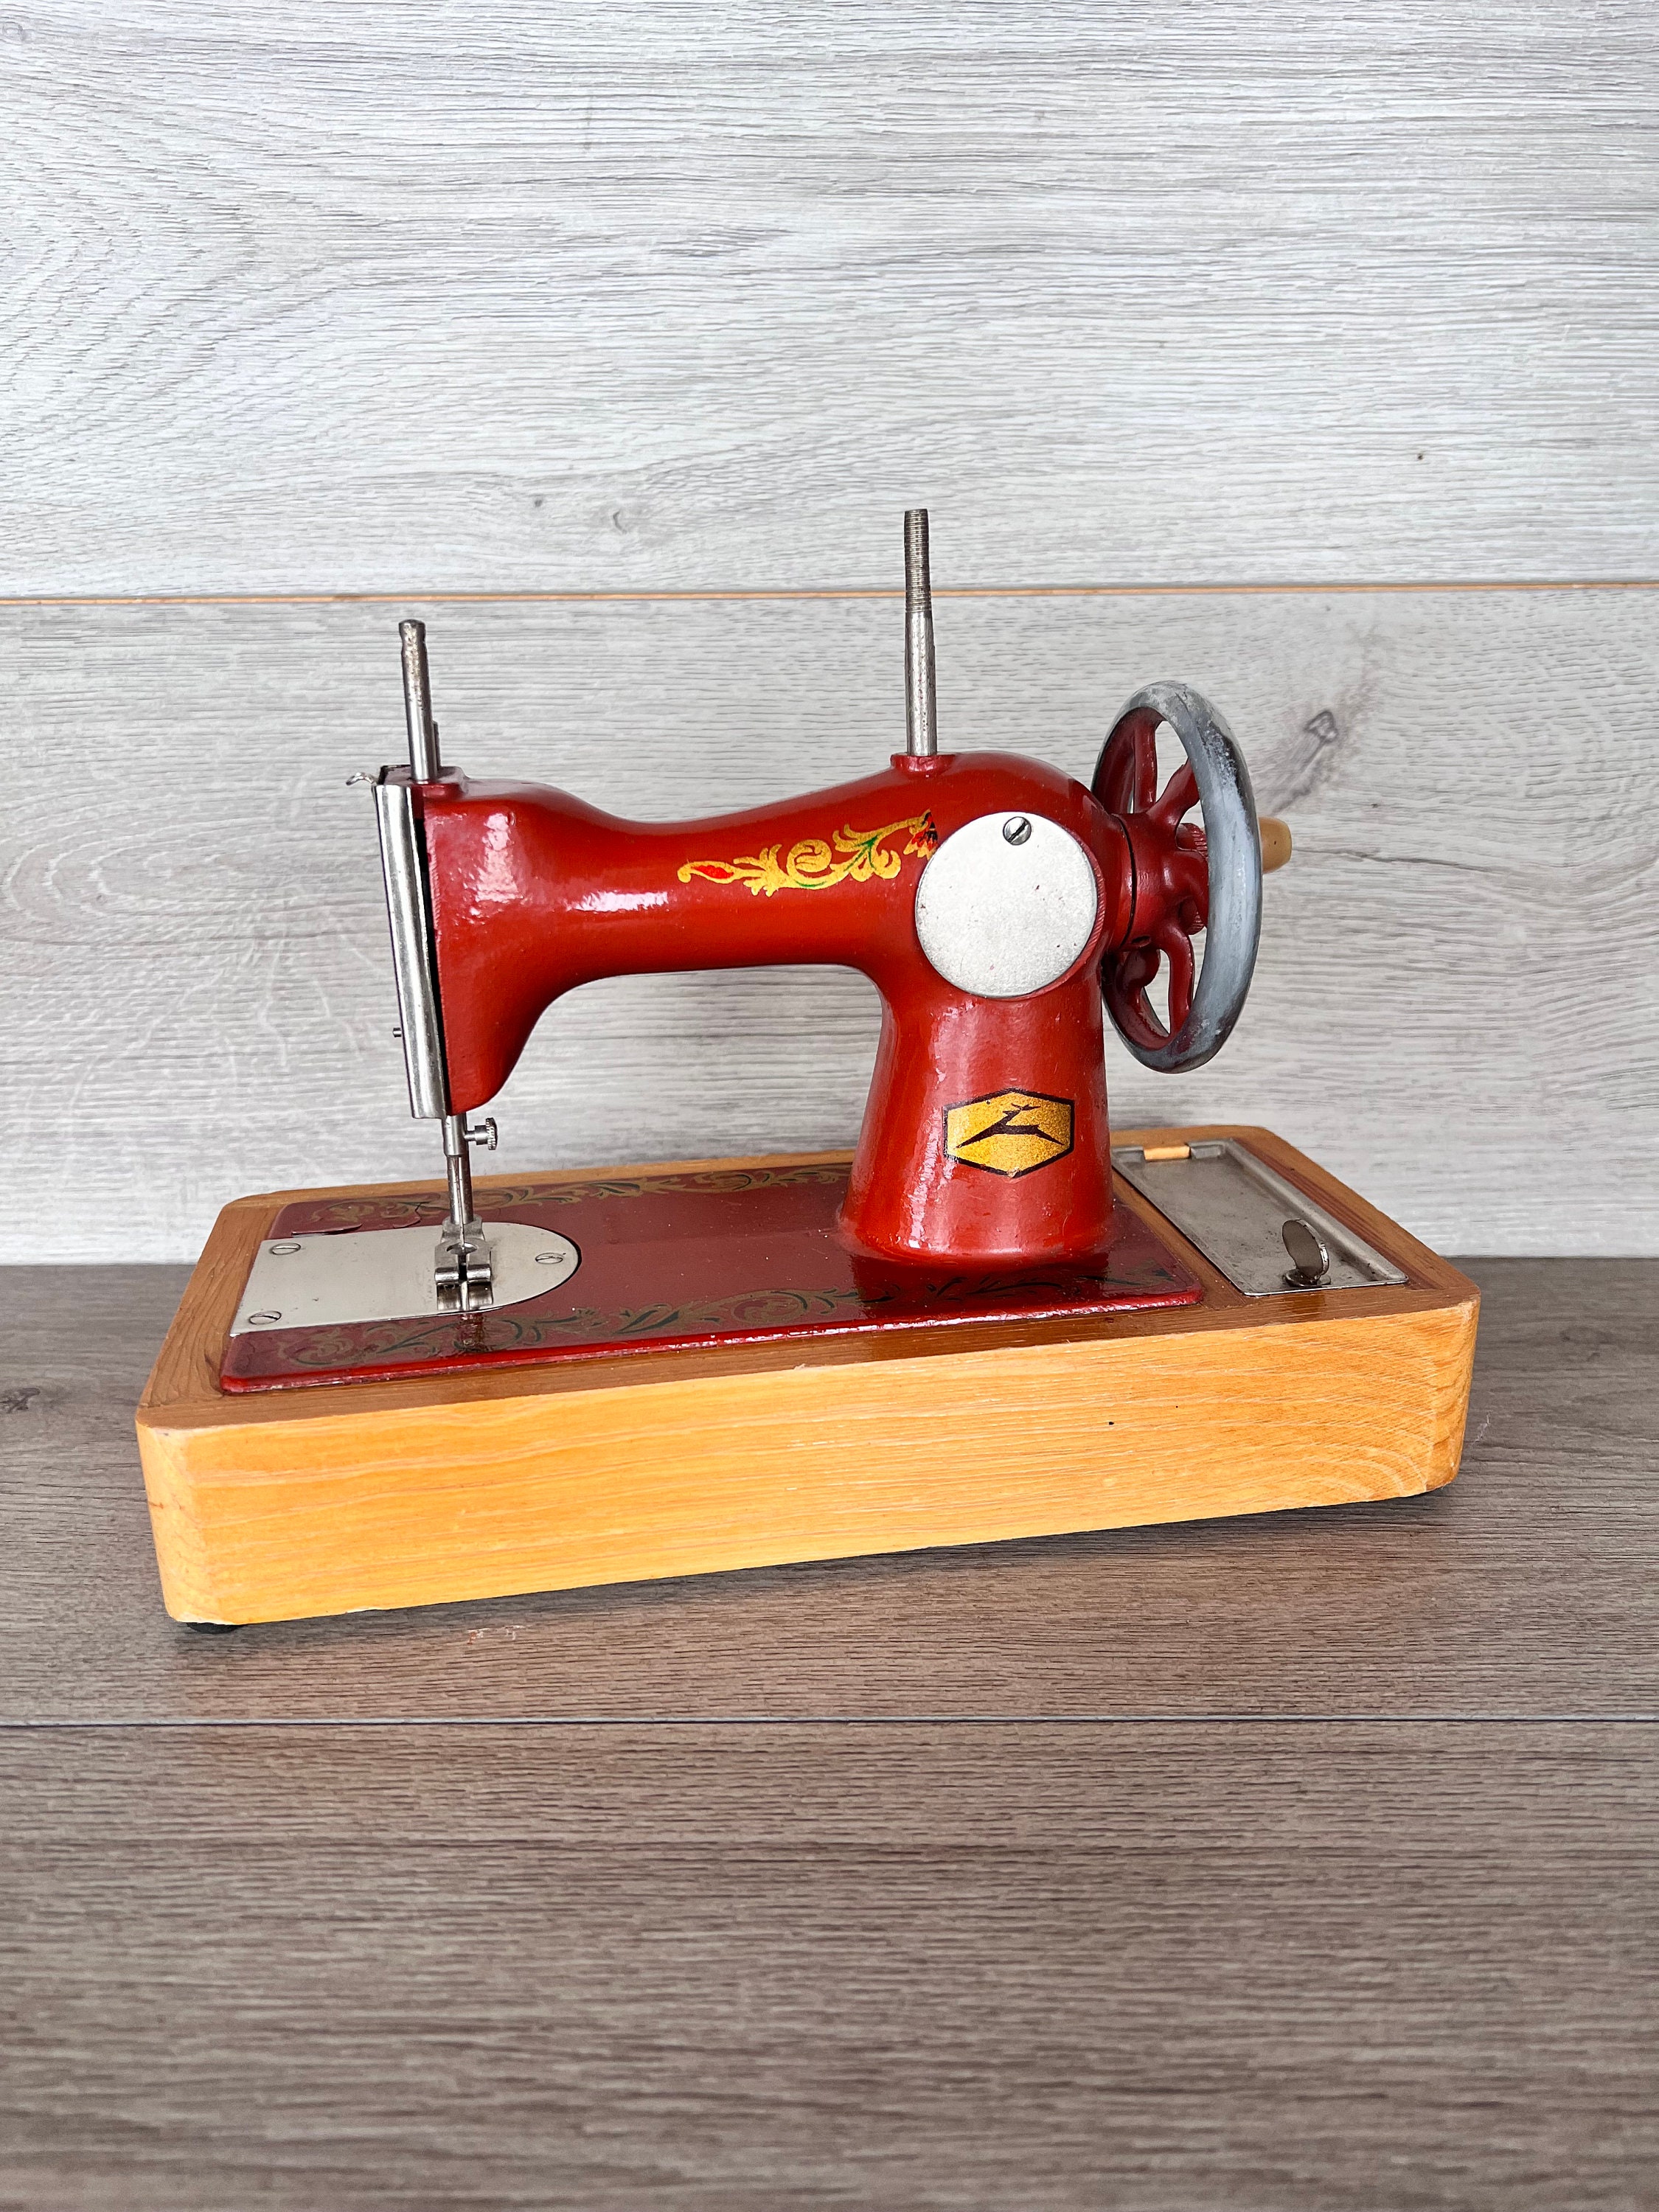 Sodopo Sewing Machine for Kids – Portable Electric Mini Children